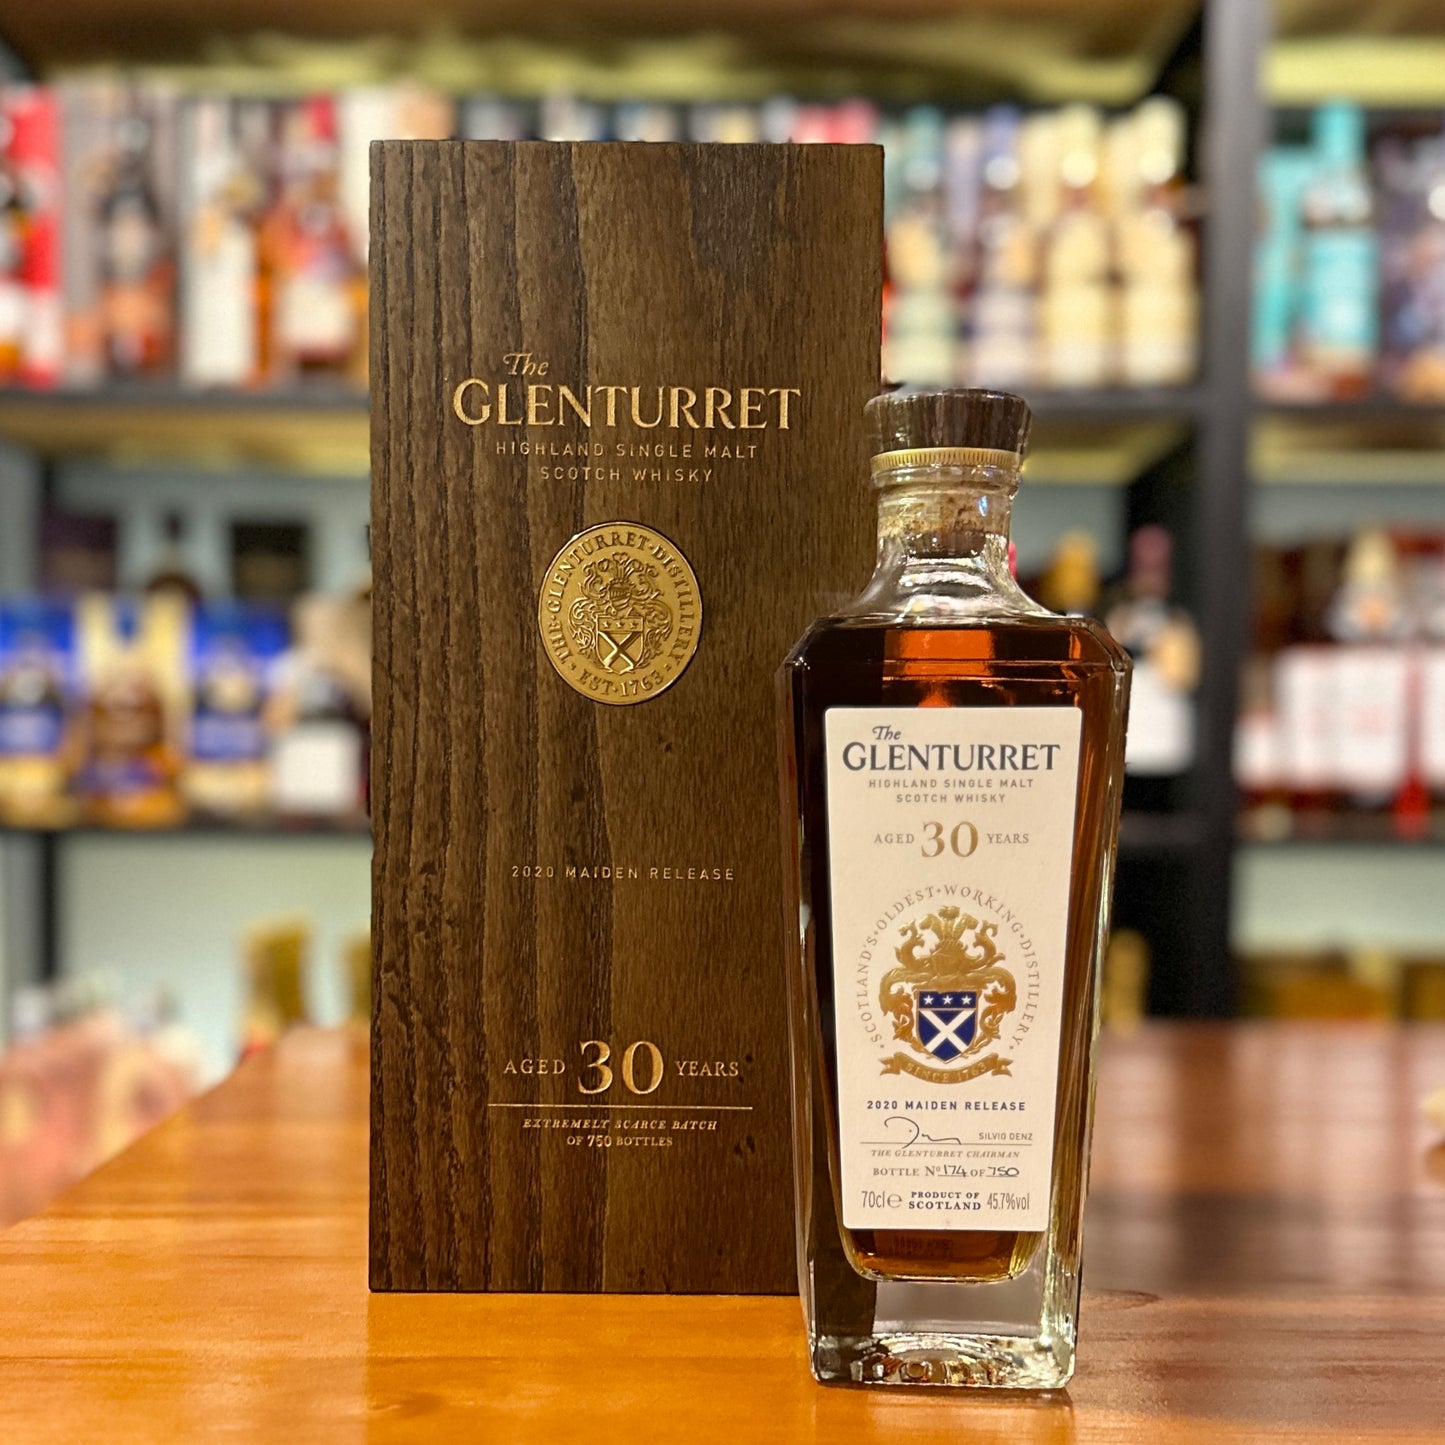 Glenturret 30 Year Old 2020 Maiden Release Single Malt Scotch Whisky